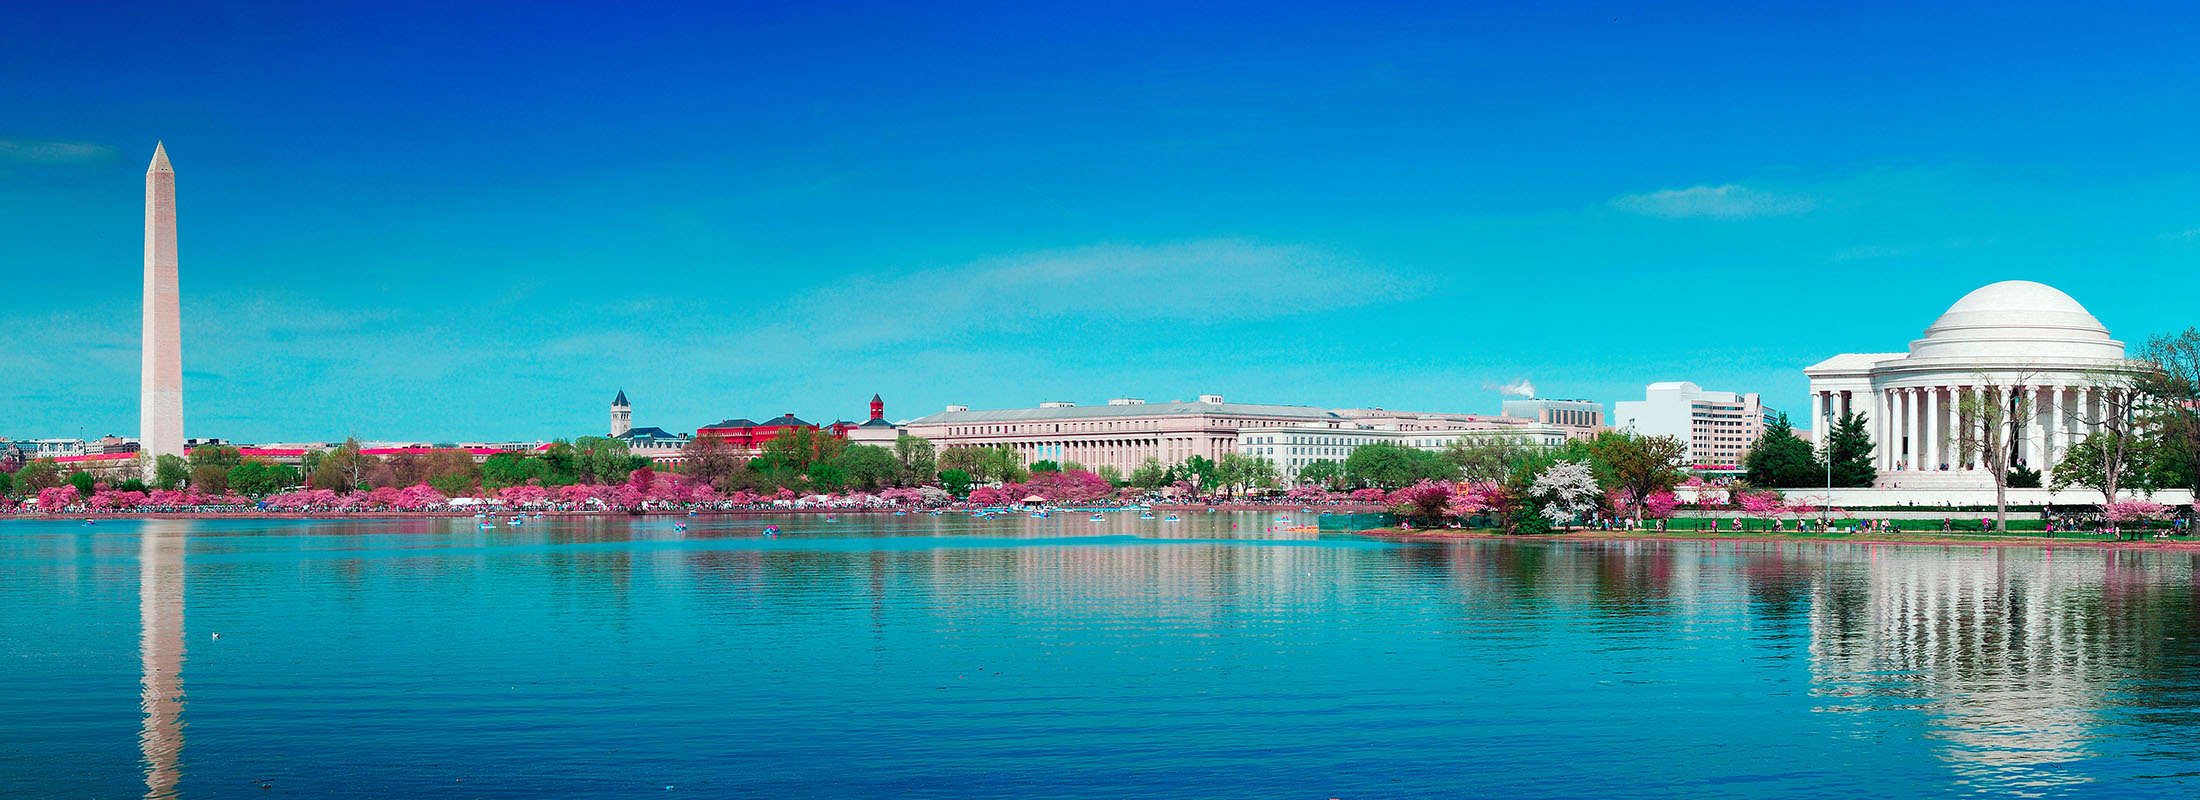 Panorama de Washington, DC, avec divers monuments nationaux